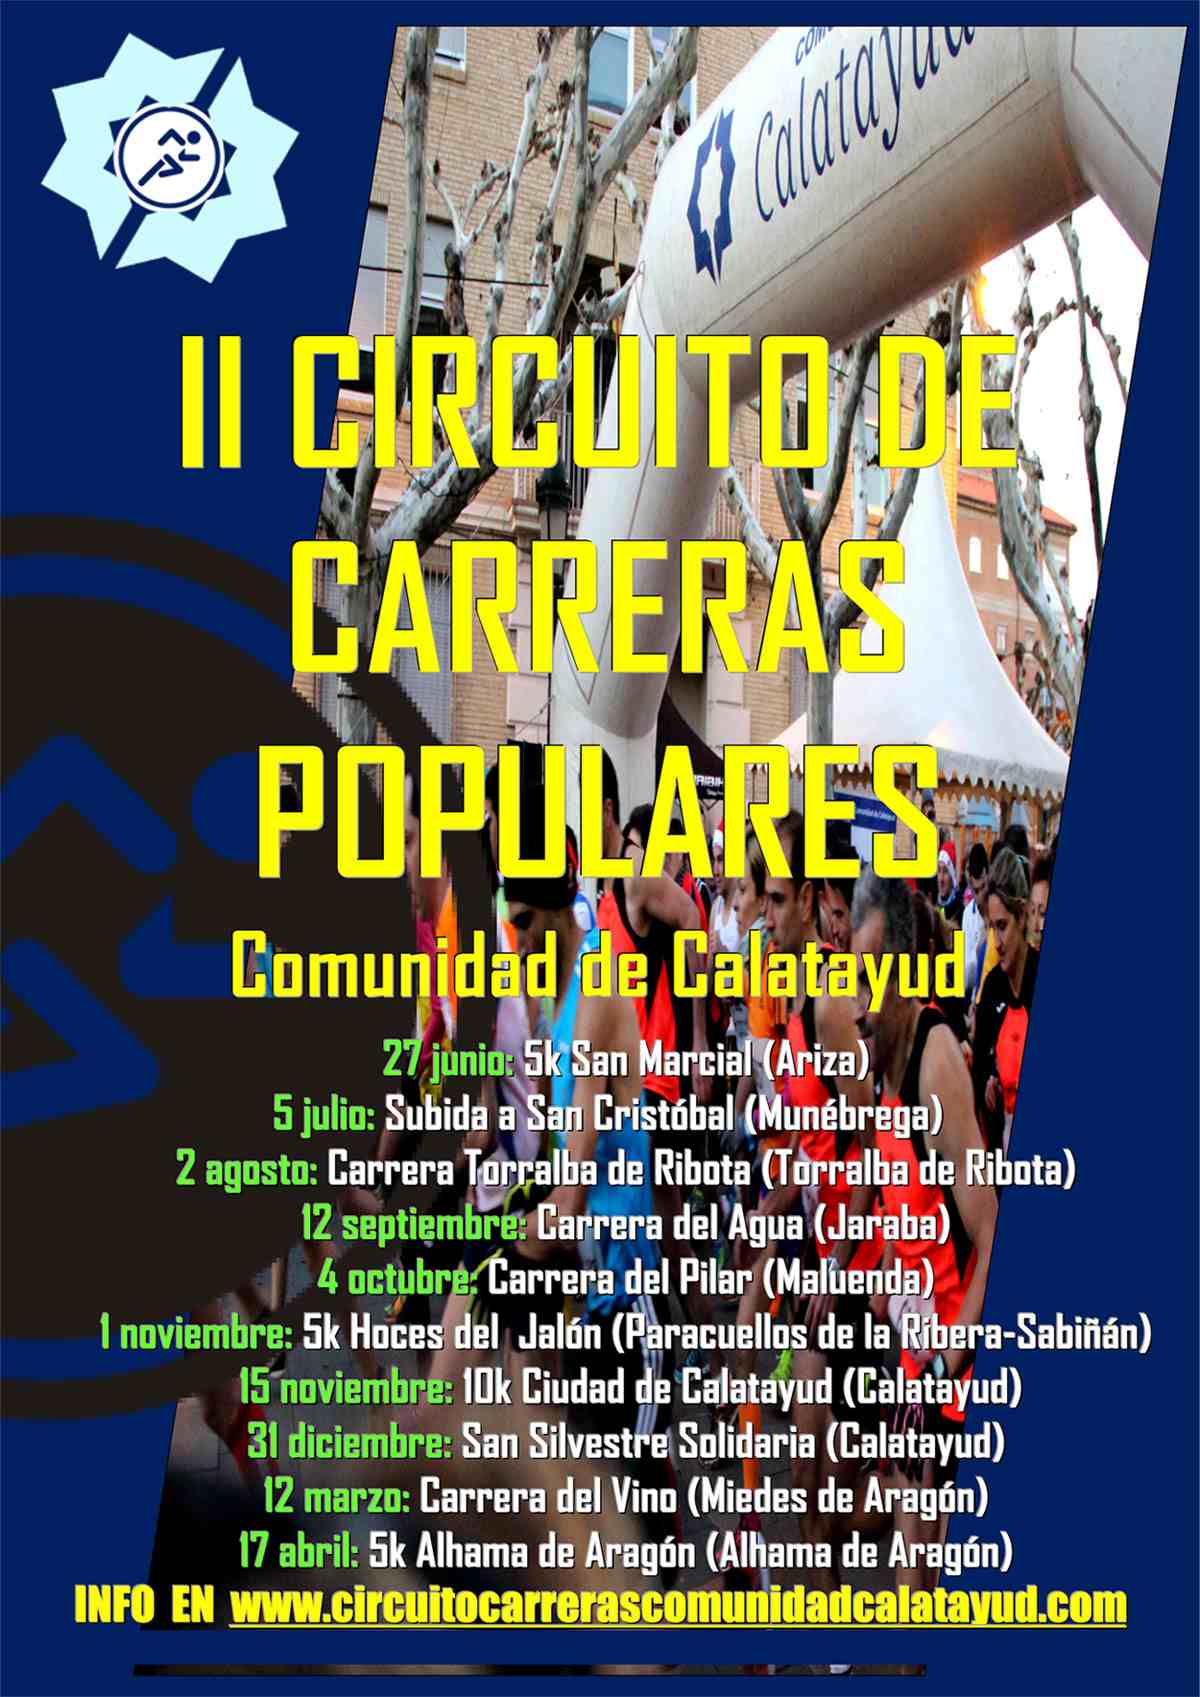 II CIRCUITO DE CARRERAS POPULARES DE LA COMARCA DE CALATAYUD - Register